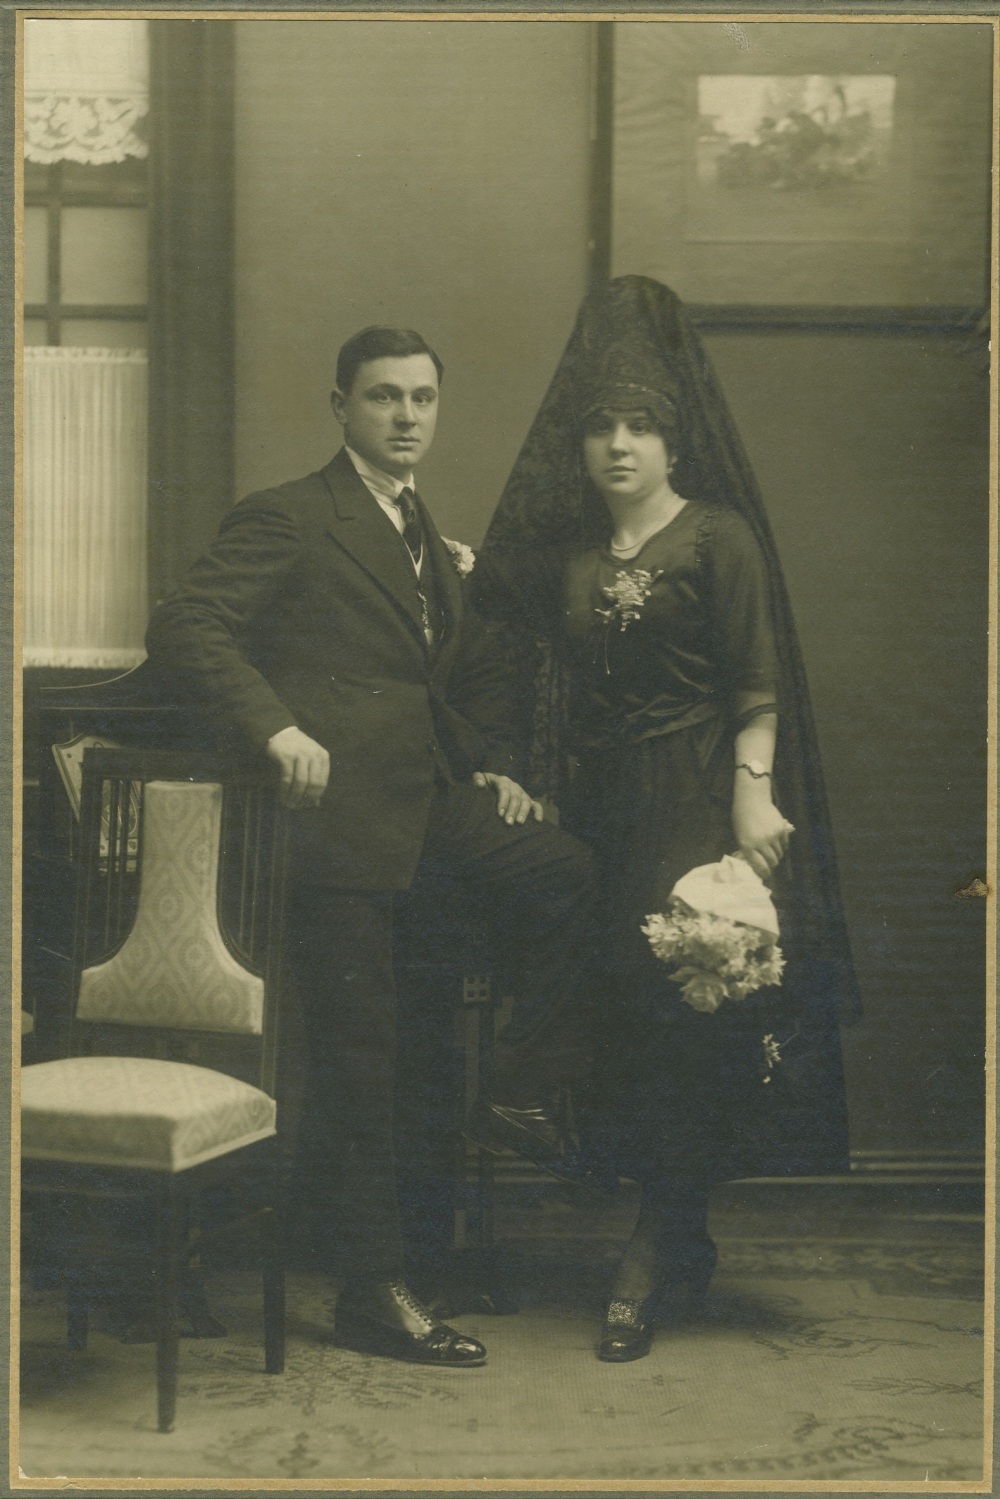 Foto de boda de los años 20